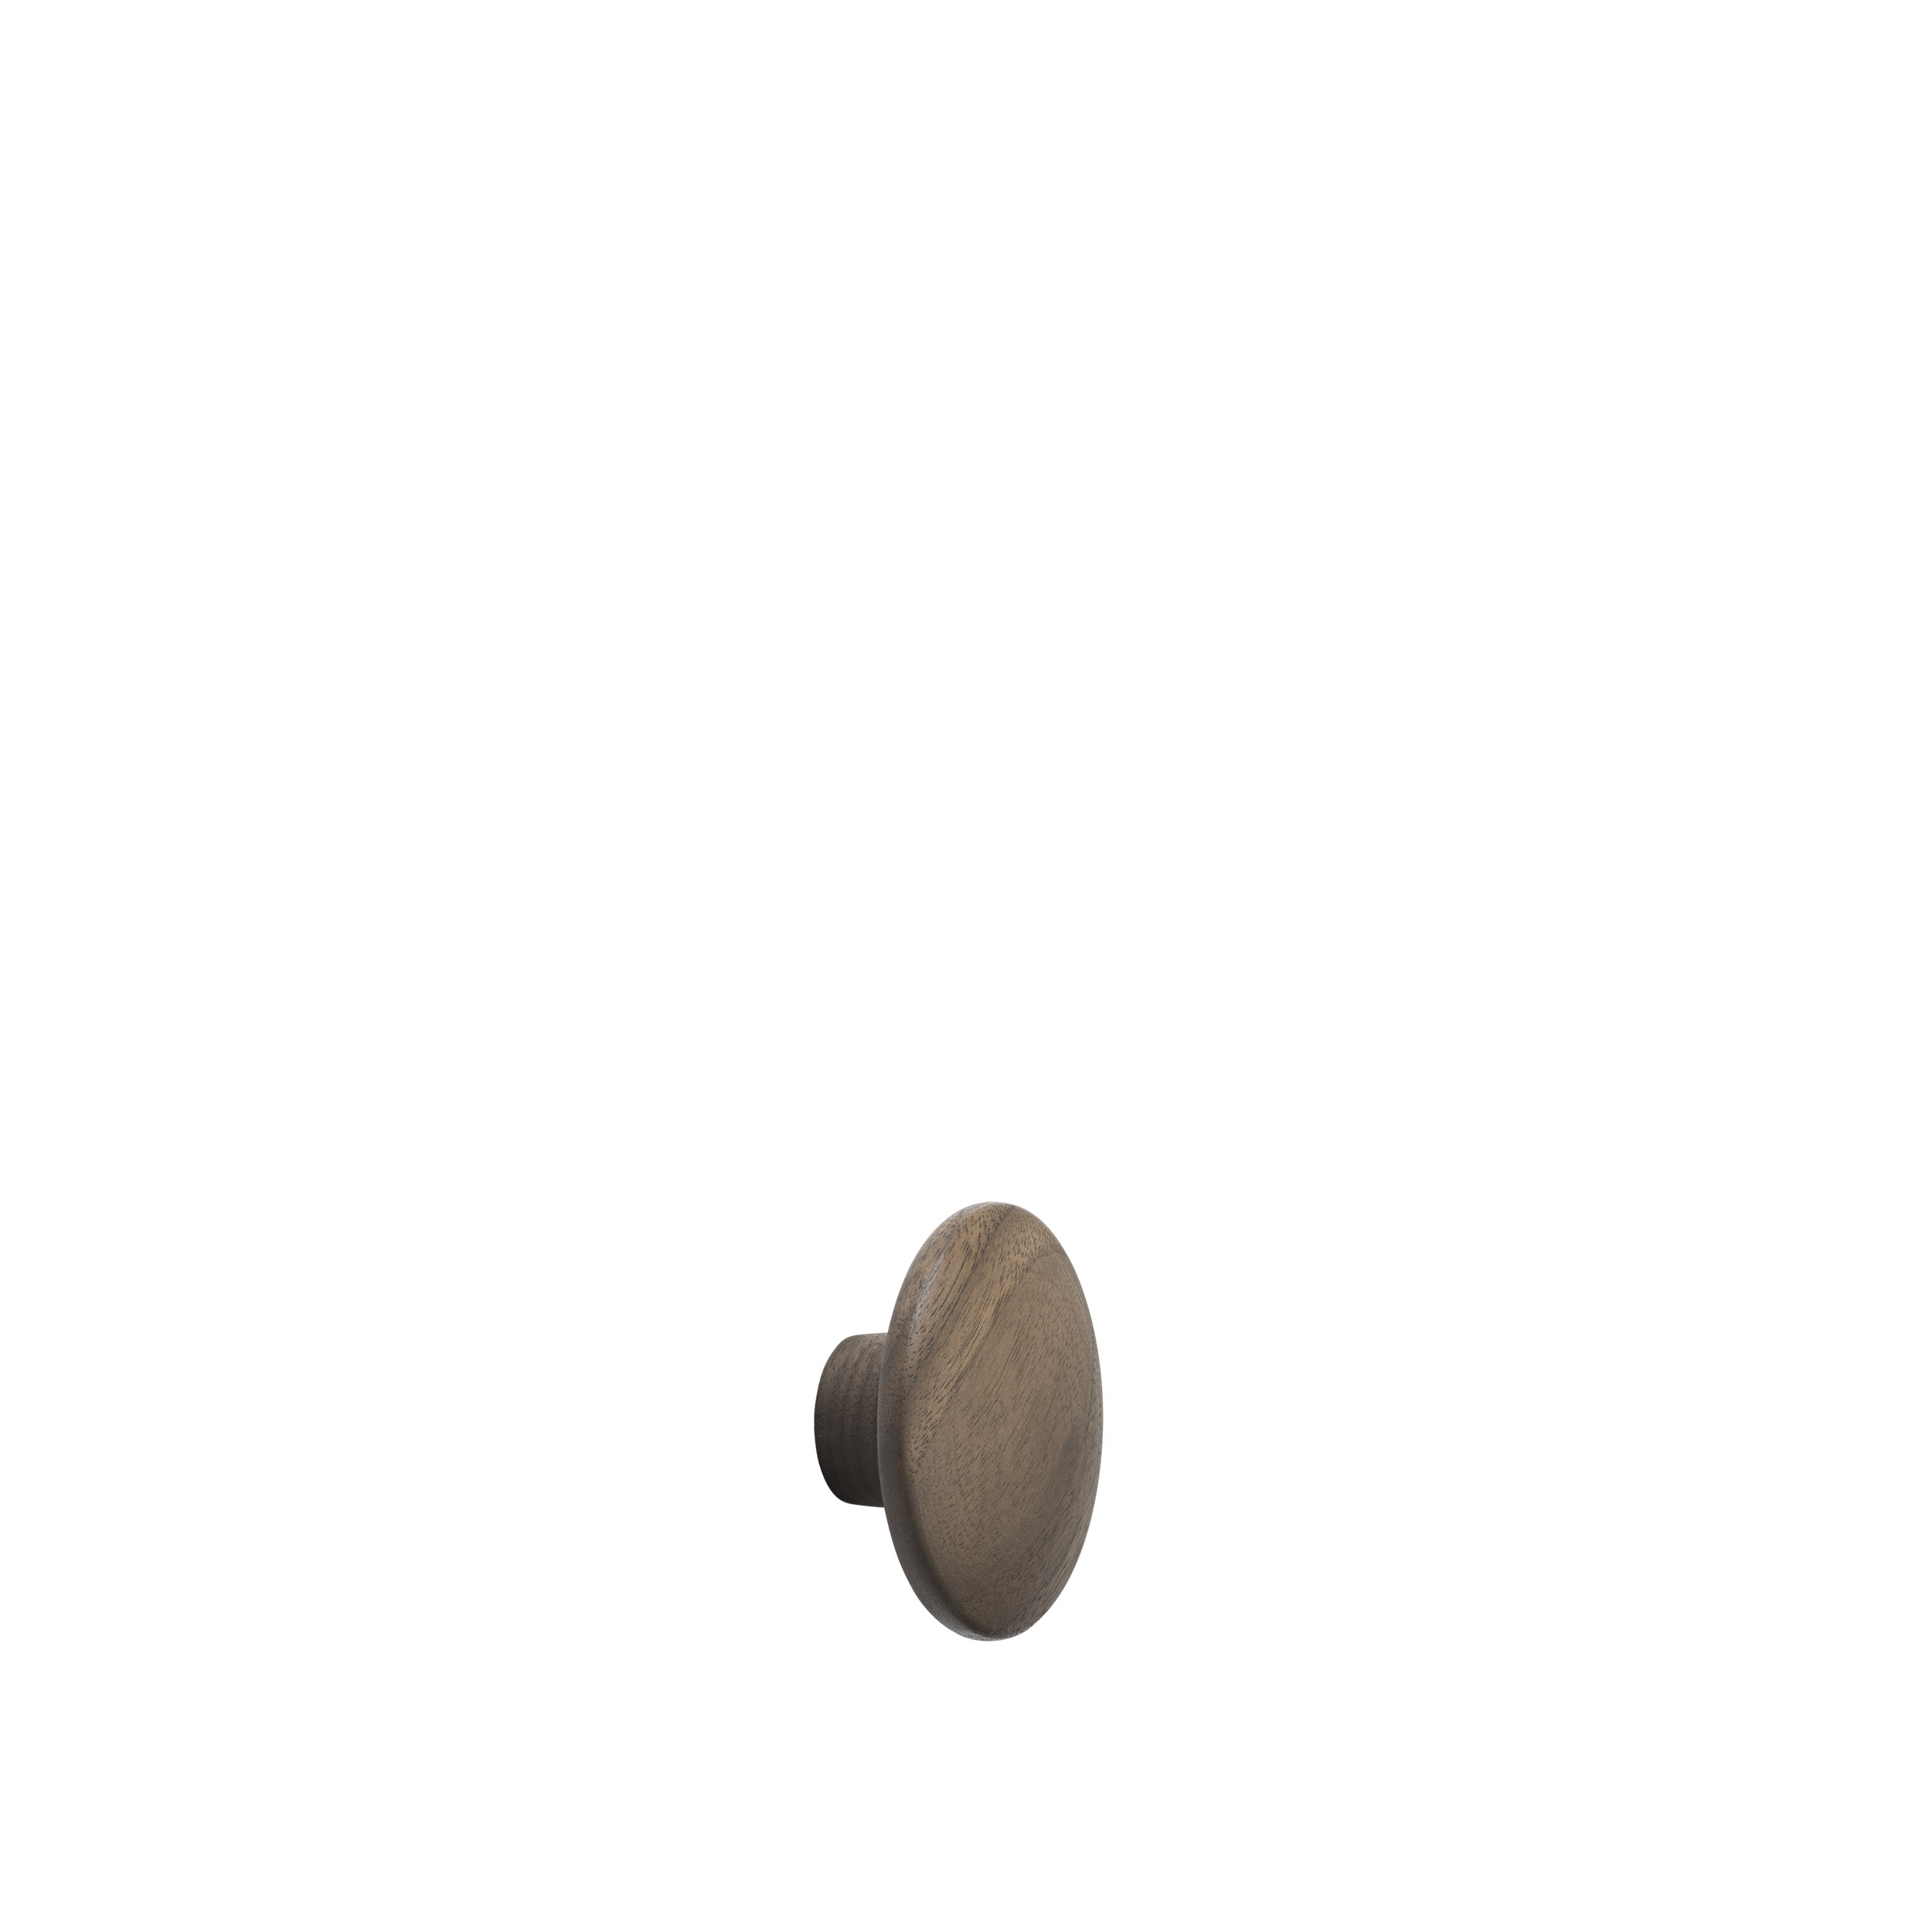 Dot wood X-small Ø 6,5 cm walnut